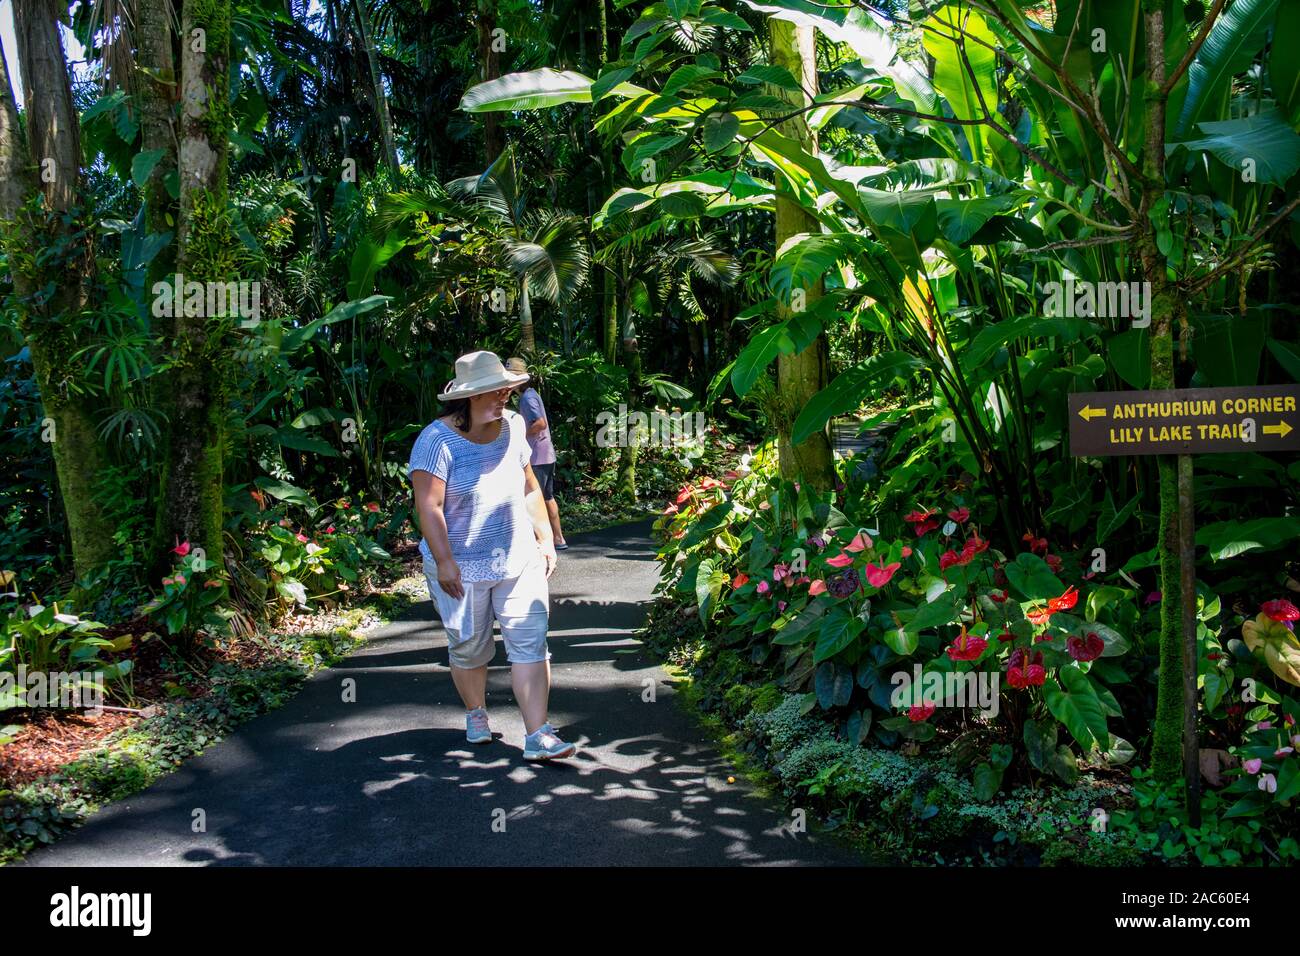 Tourists walk through the Anthurium Corner at Hawaii Tropical Botanical Garden, Papa'ikou, Big Island of Hawaiʻi. Stock Photo